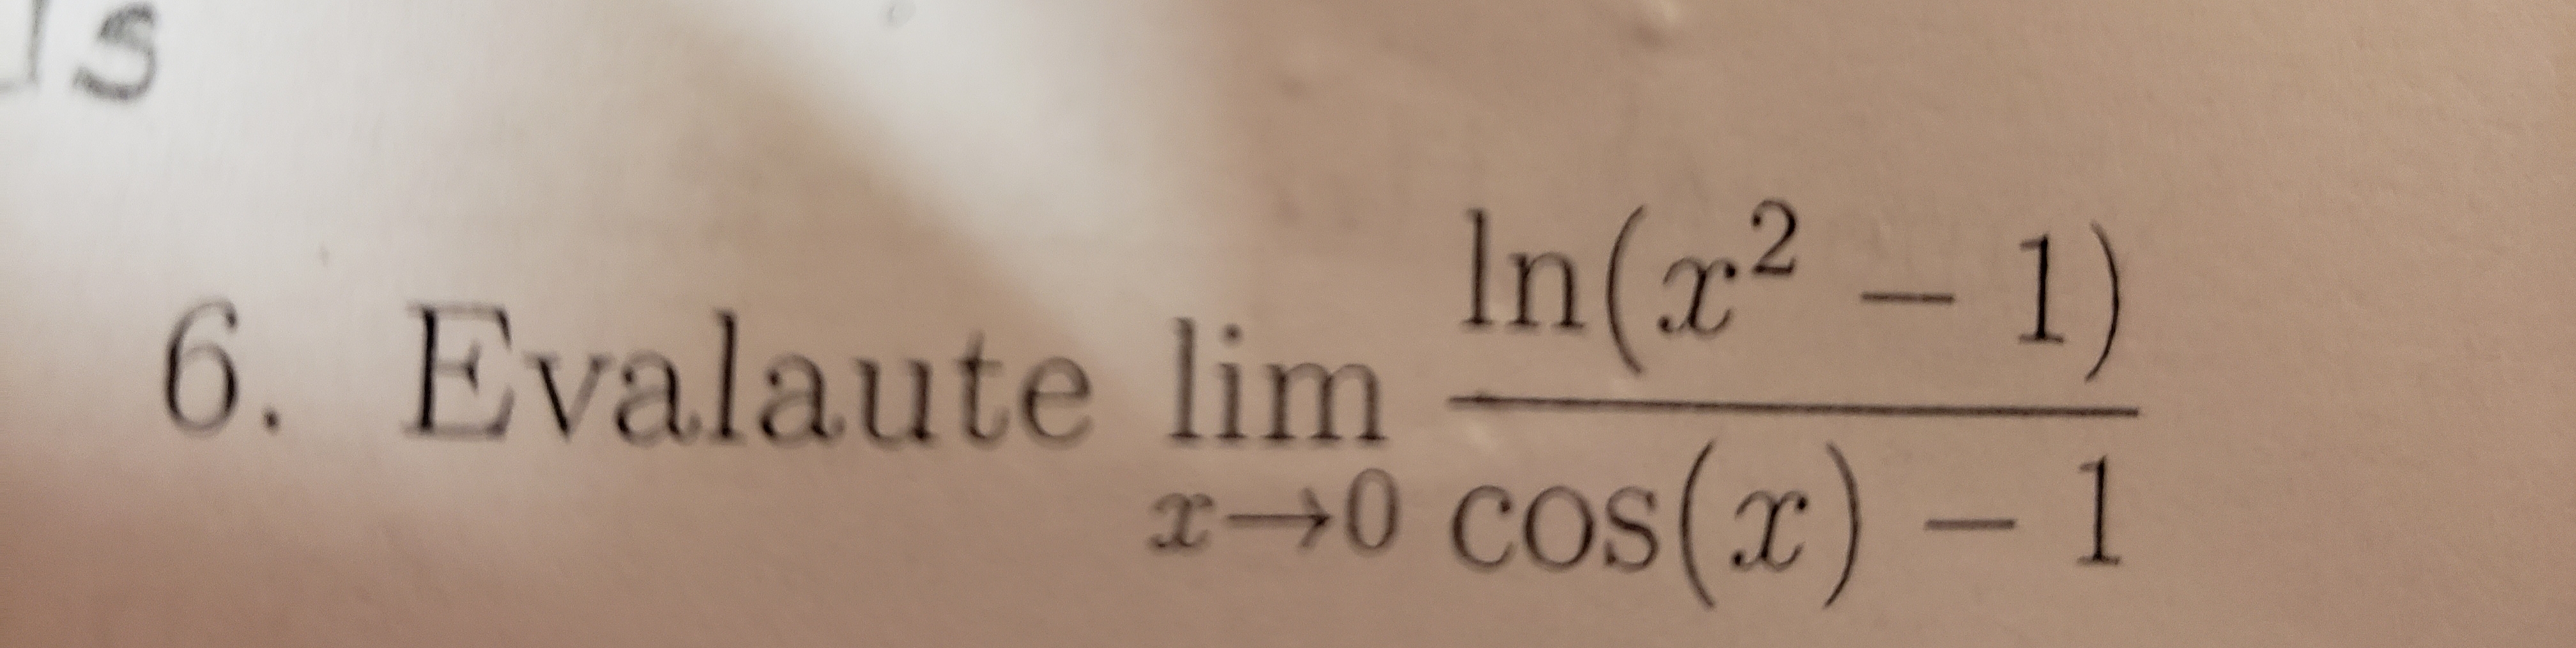 IS
In(x² – 1)
6. Evalaute lim
x→0 cos(x) - 1
